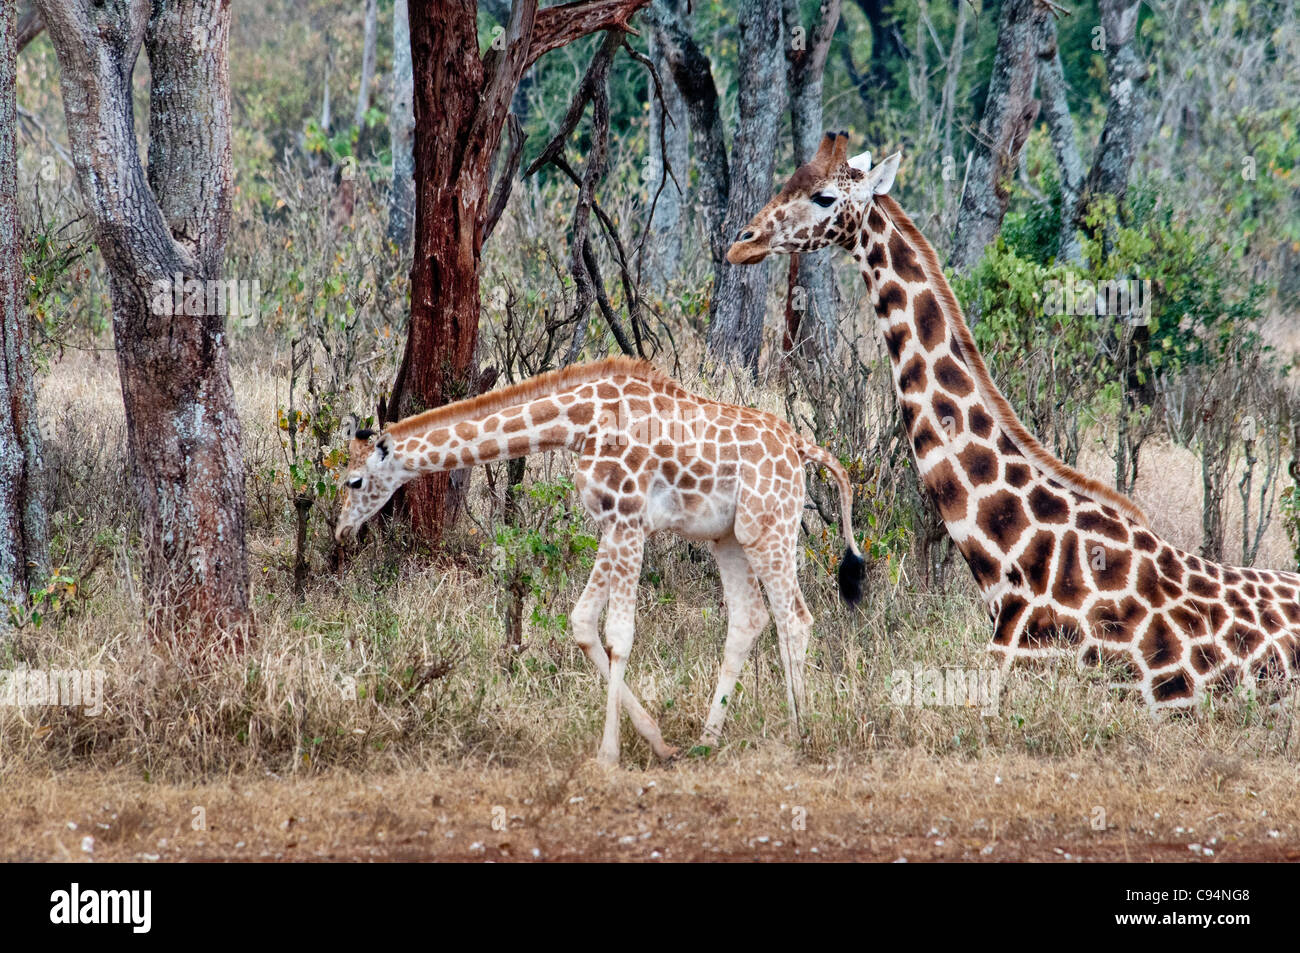 Rothschild Giraffe mother sitting down with one standing calf, Giraffe Manor, Nairobi, Kenya, Africa Stock Photo